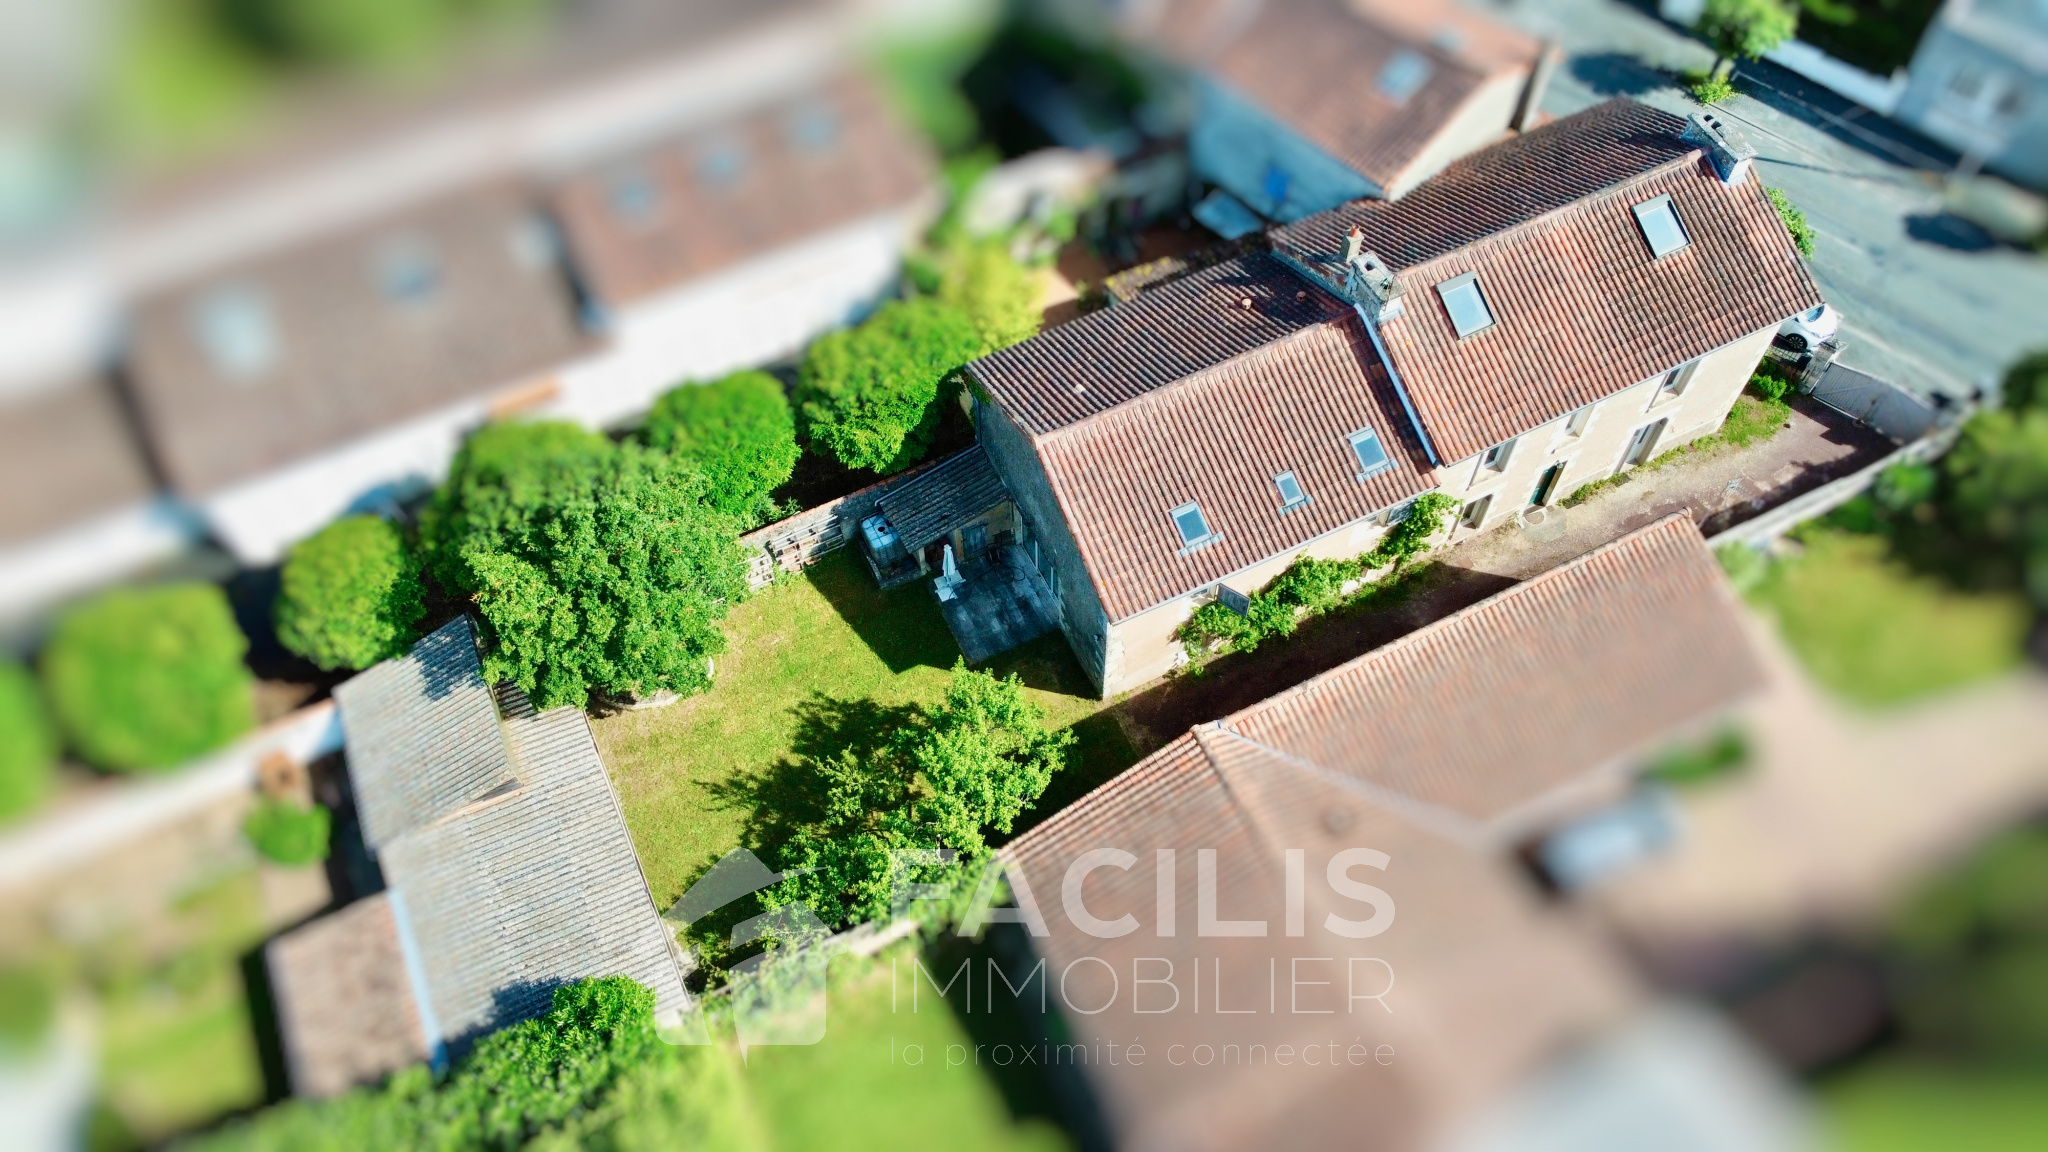 Vente Maison 258m² 9 Pièces à Poitiers (86000) - Facilis Immobilier